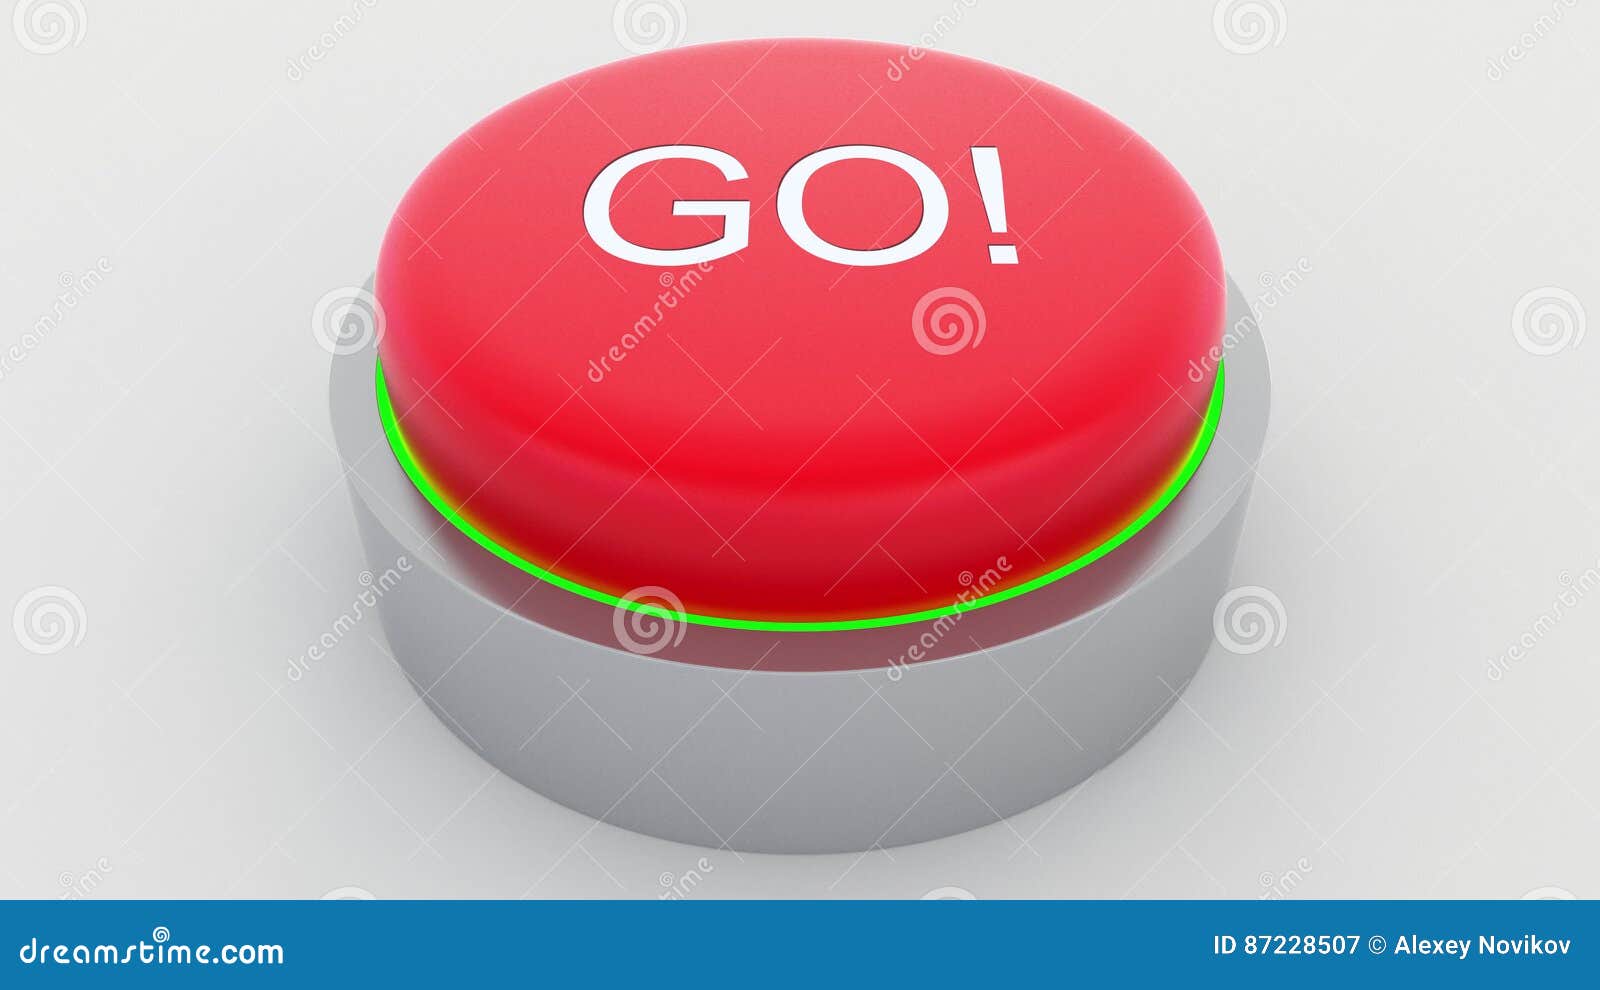 Красная кнопка видео. Красная кнопка не нажимать на прозрачном фоне. Красная кнопка не нажимать. Картинка кнопки красная синяя зеленая.